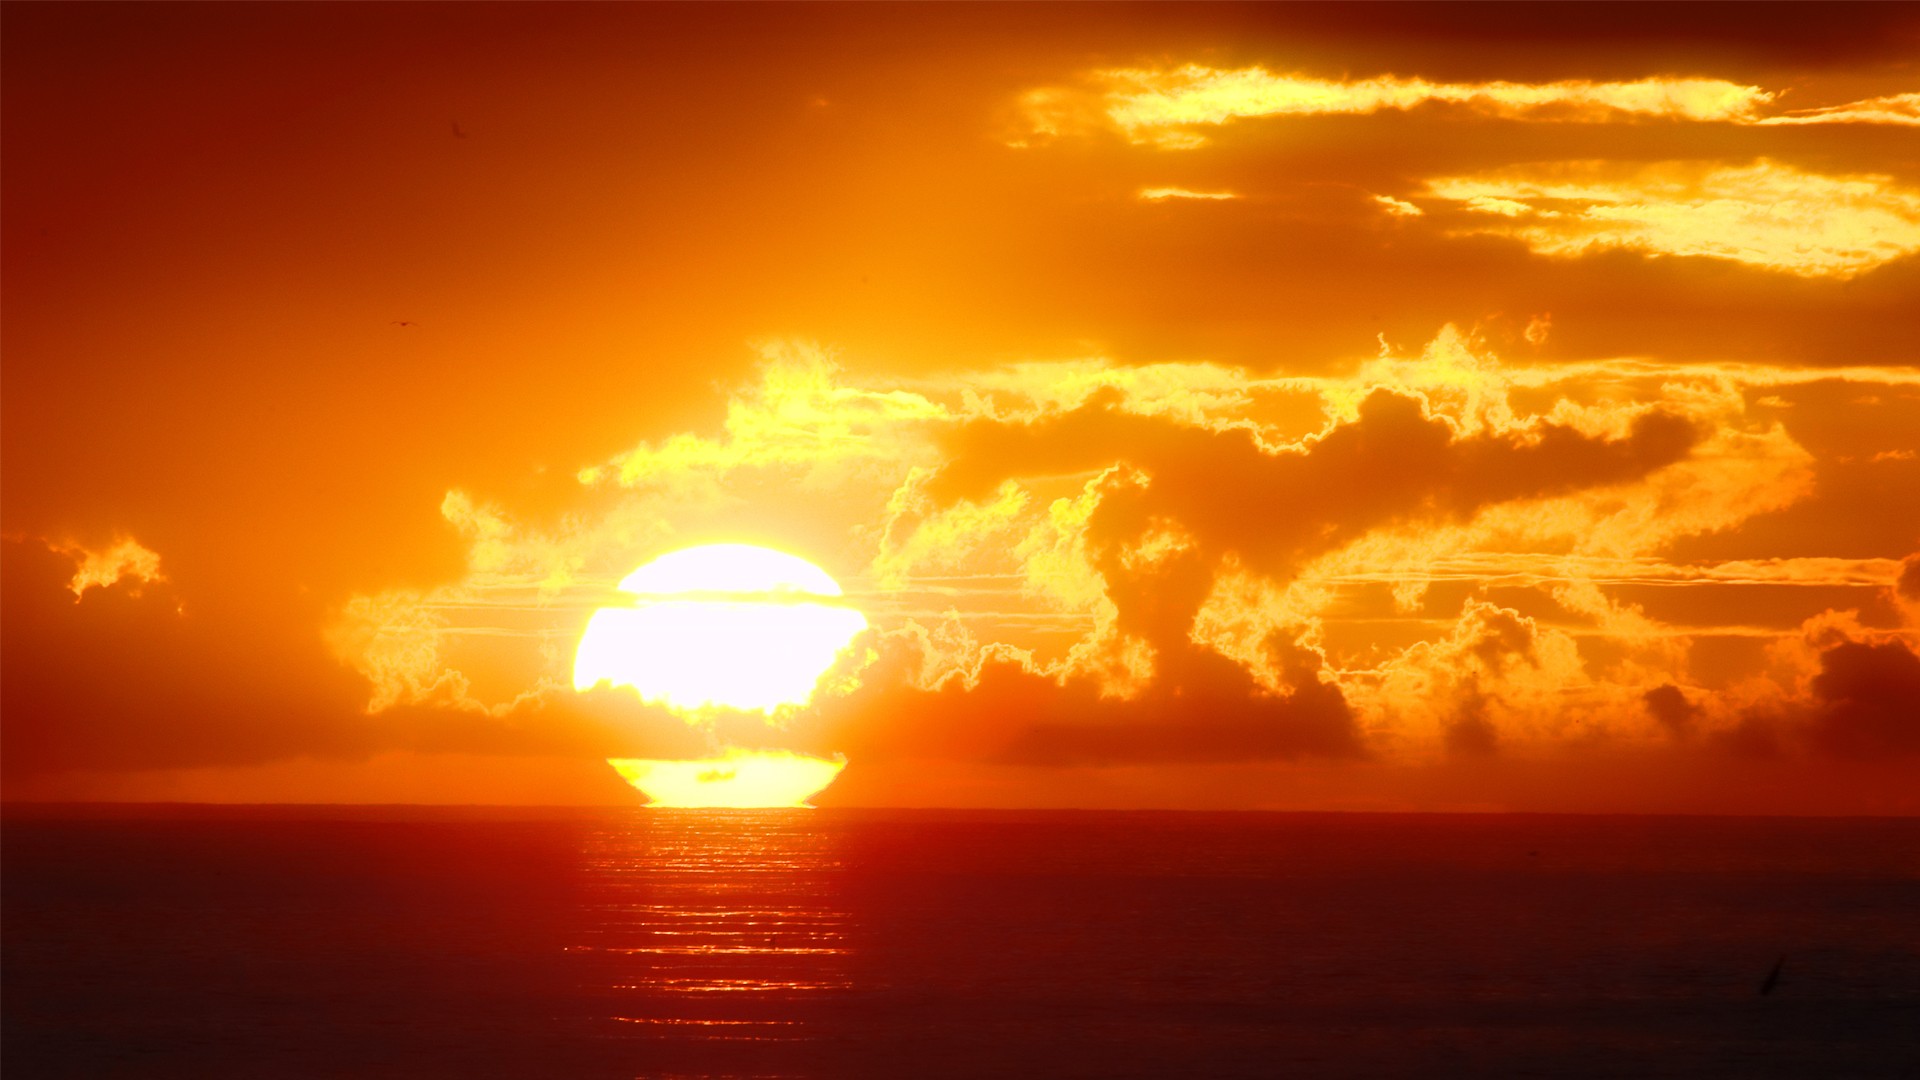 Скачать обои бесплатно Солнце, Горизонт, Океан, Восход, Облако, Земля/природа, Закат Солнца картинка на рабочий стол ПК